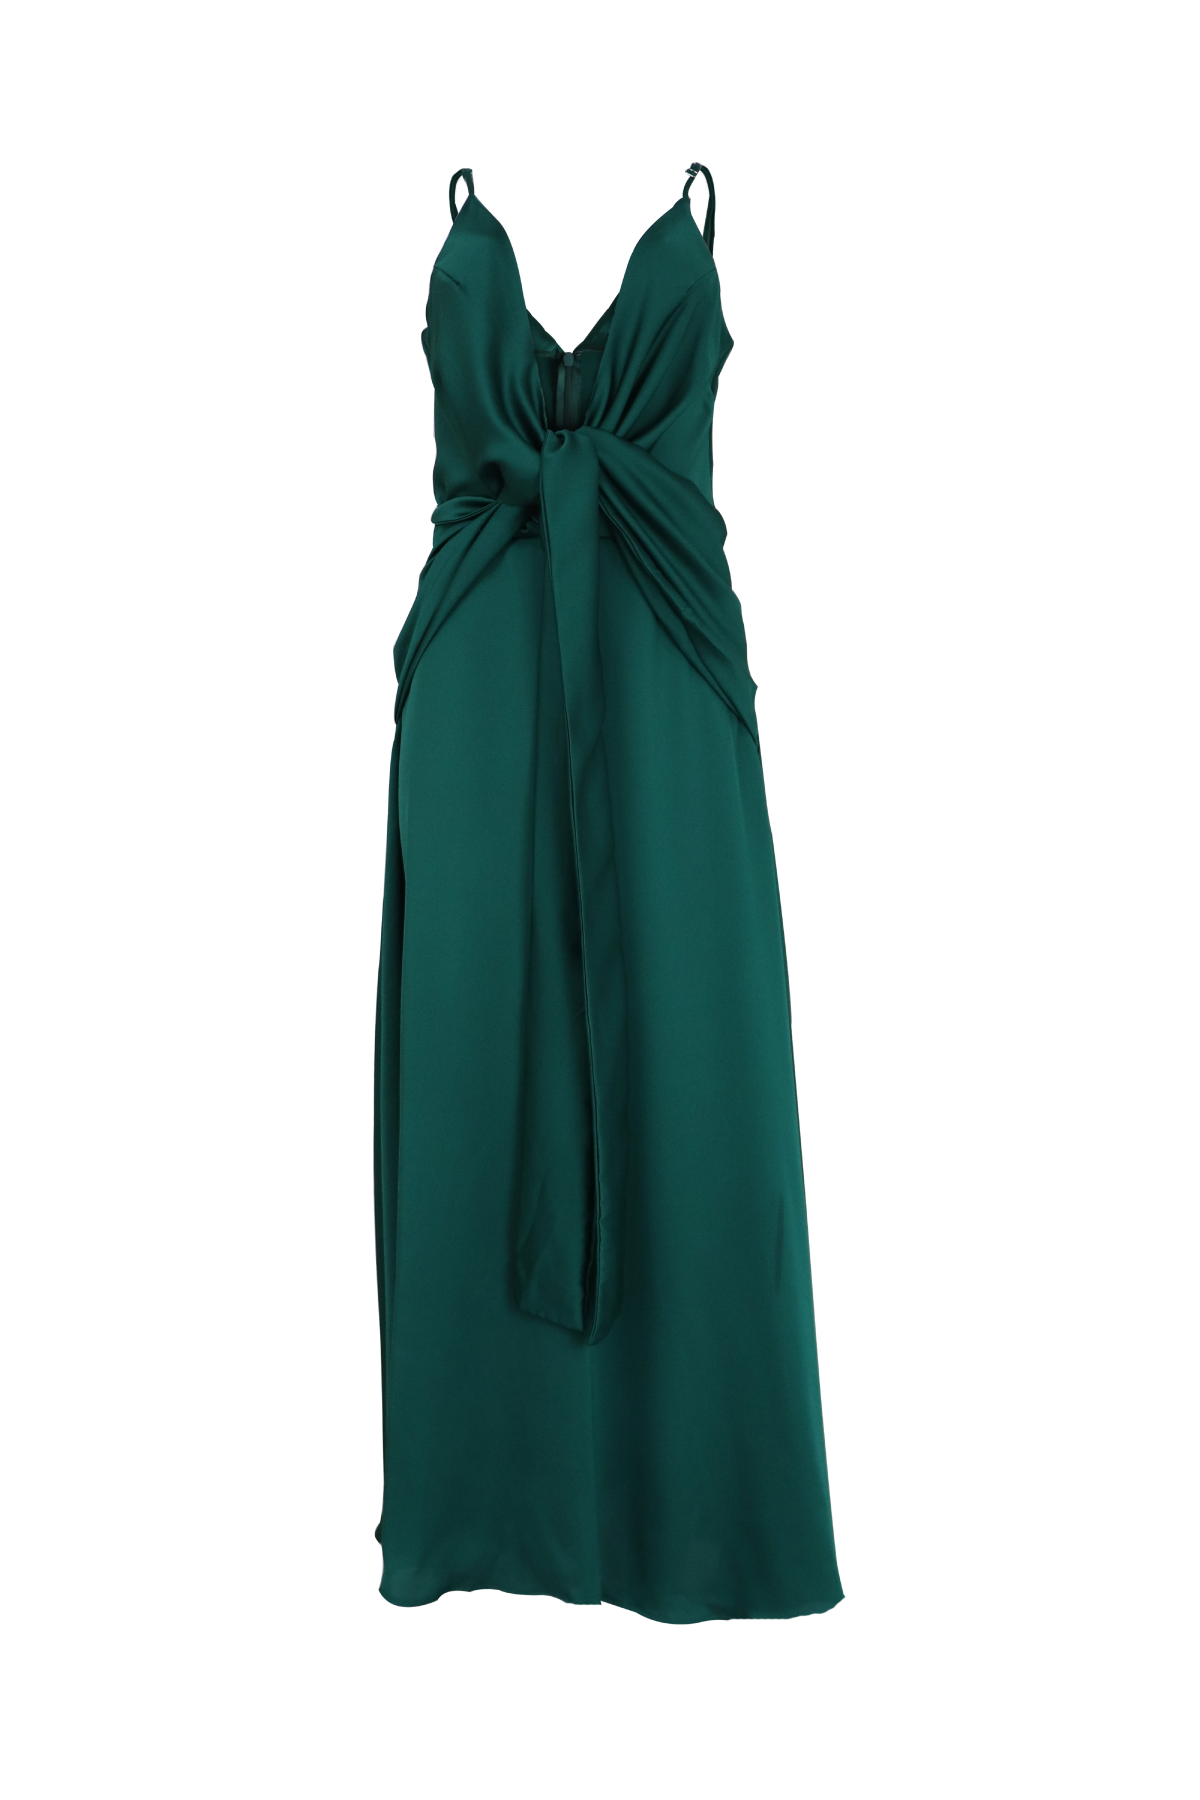 Vestido largo con escote profundo color verde esmeralda